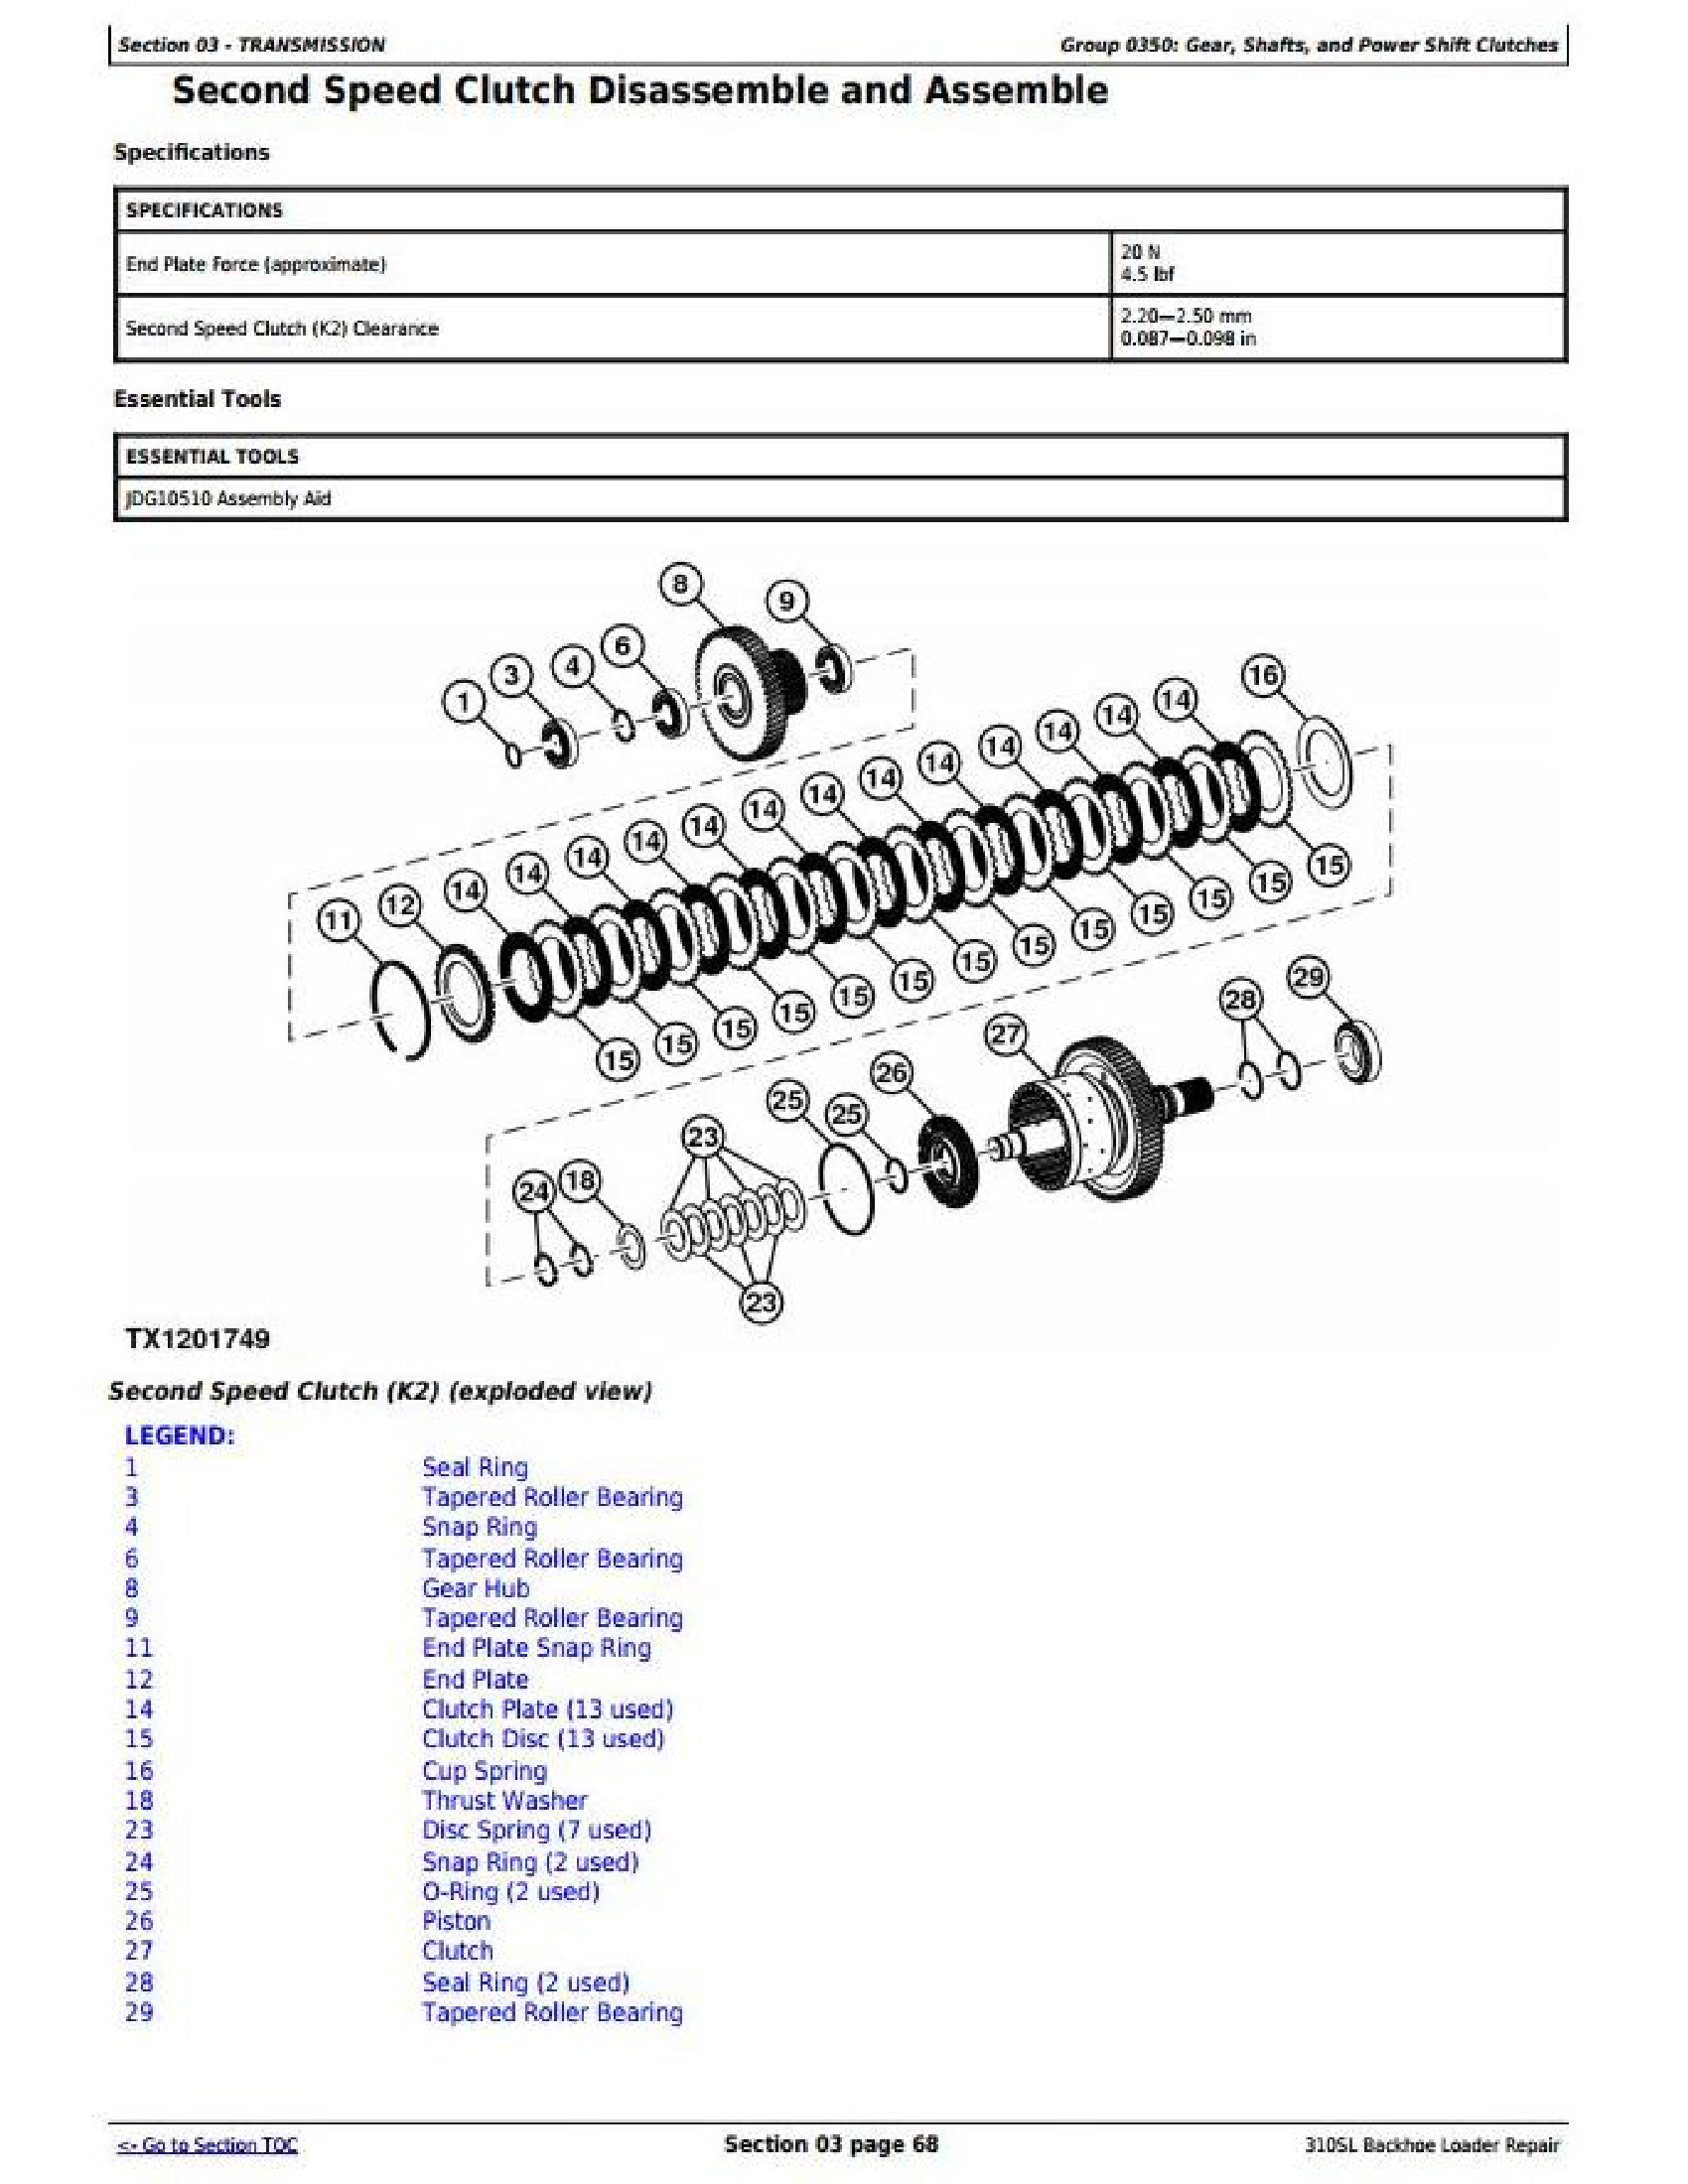 John Deere 990 manual pdf